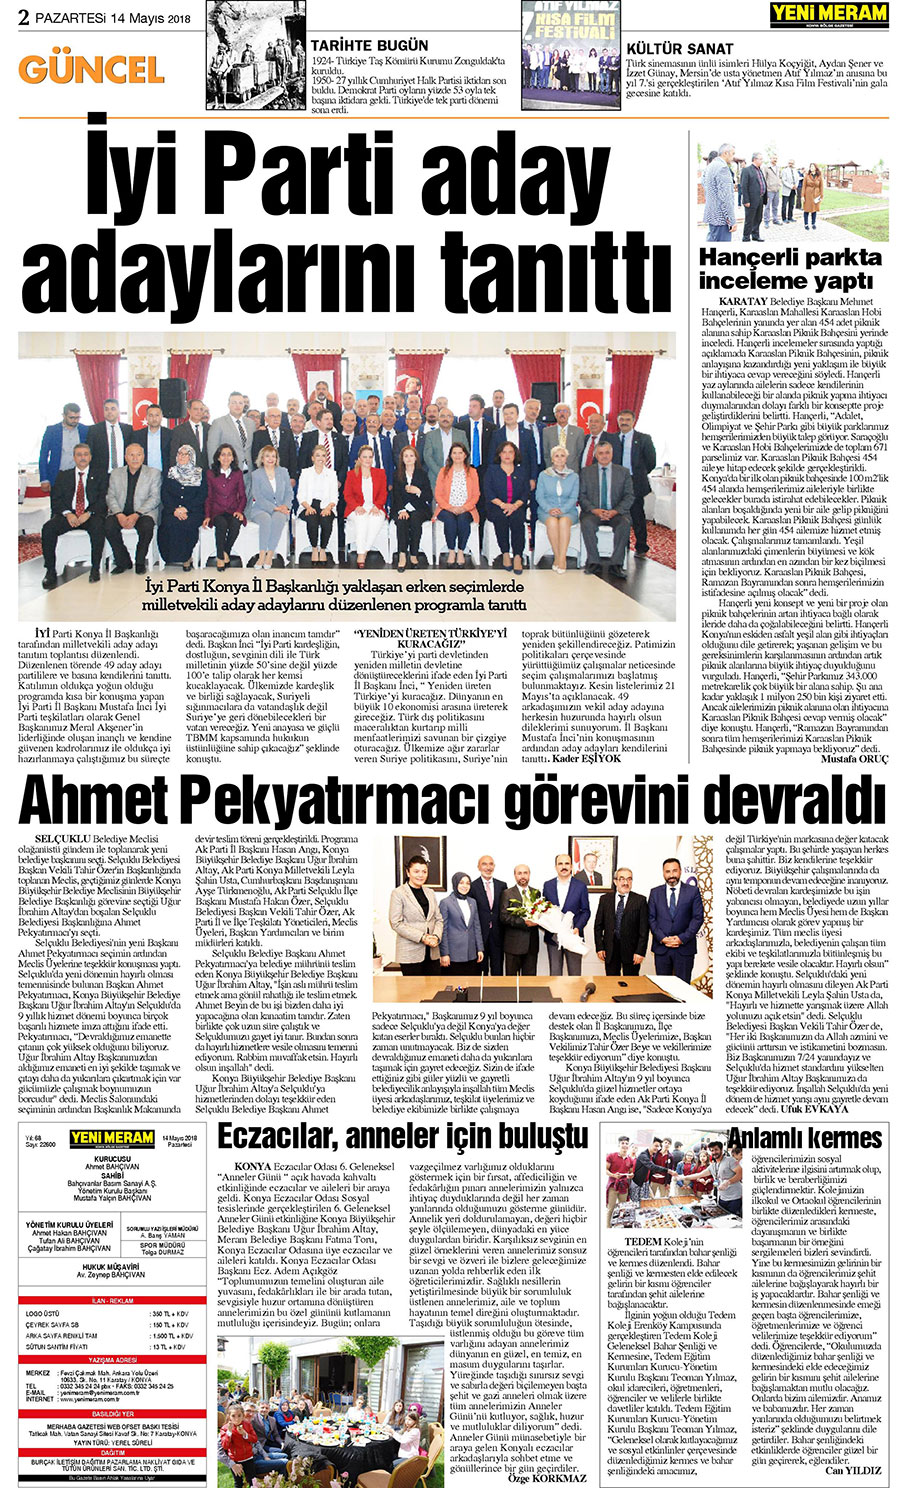 14 Mayıs 2018 Yeni Meram Gazetesi